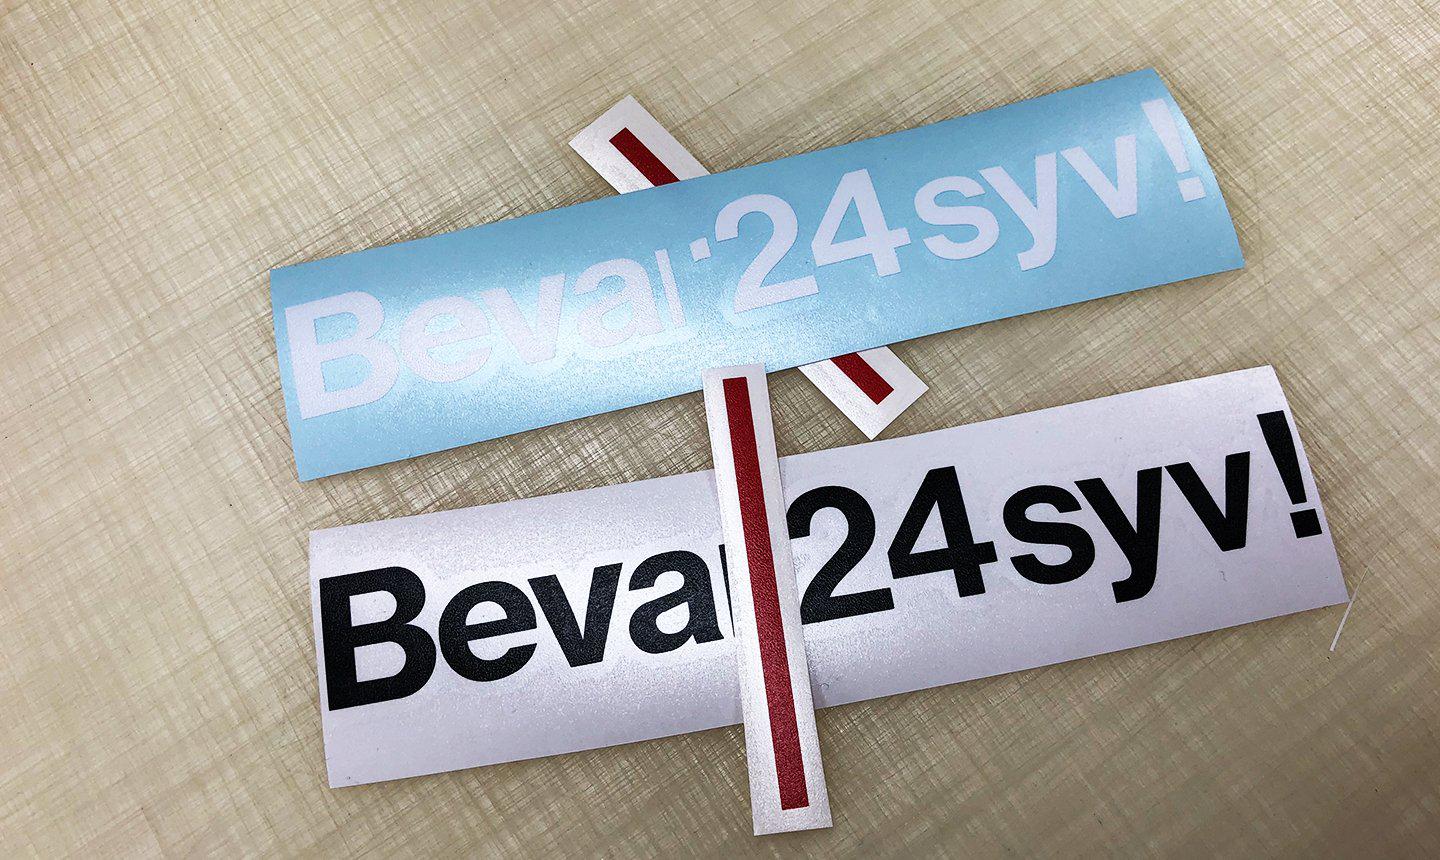 Bevar 24syv - make it stick